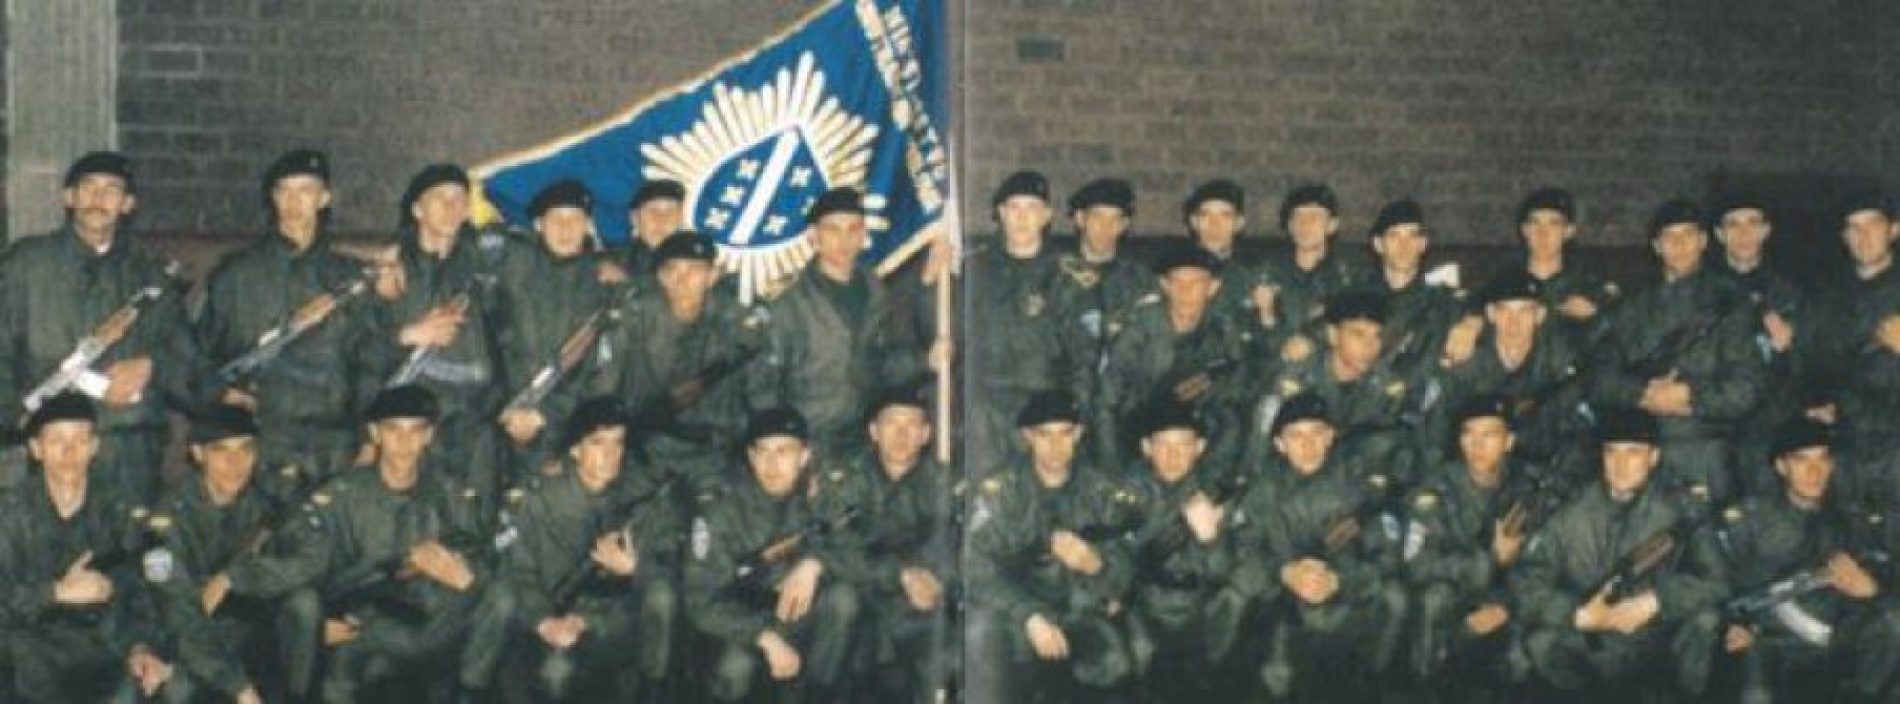 Obilježena 25. godišnjica formiranja Specijalne jedinice MUP-a RBiH – Odreda policije “Bosna”